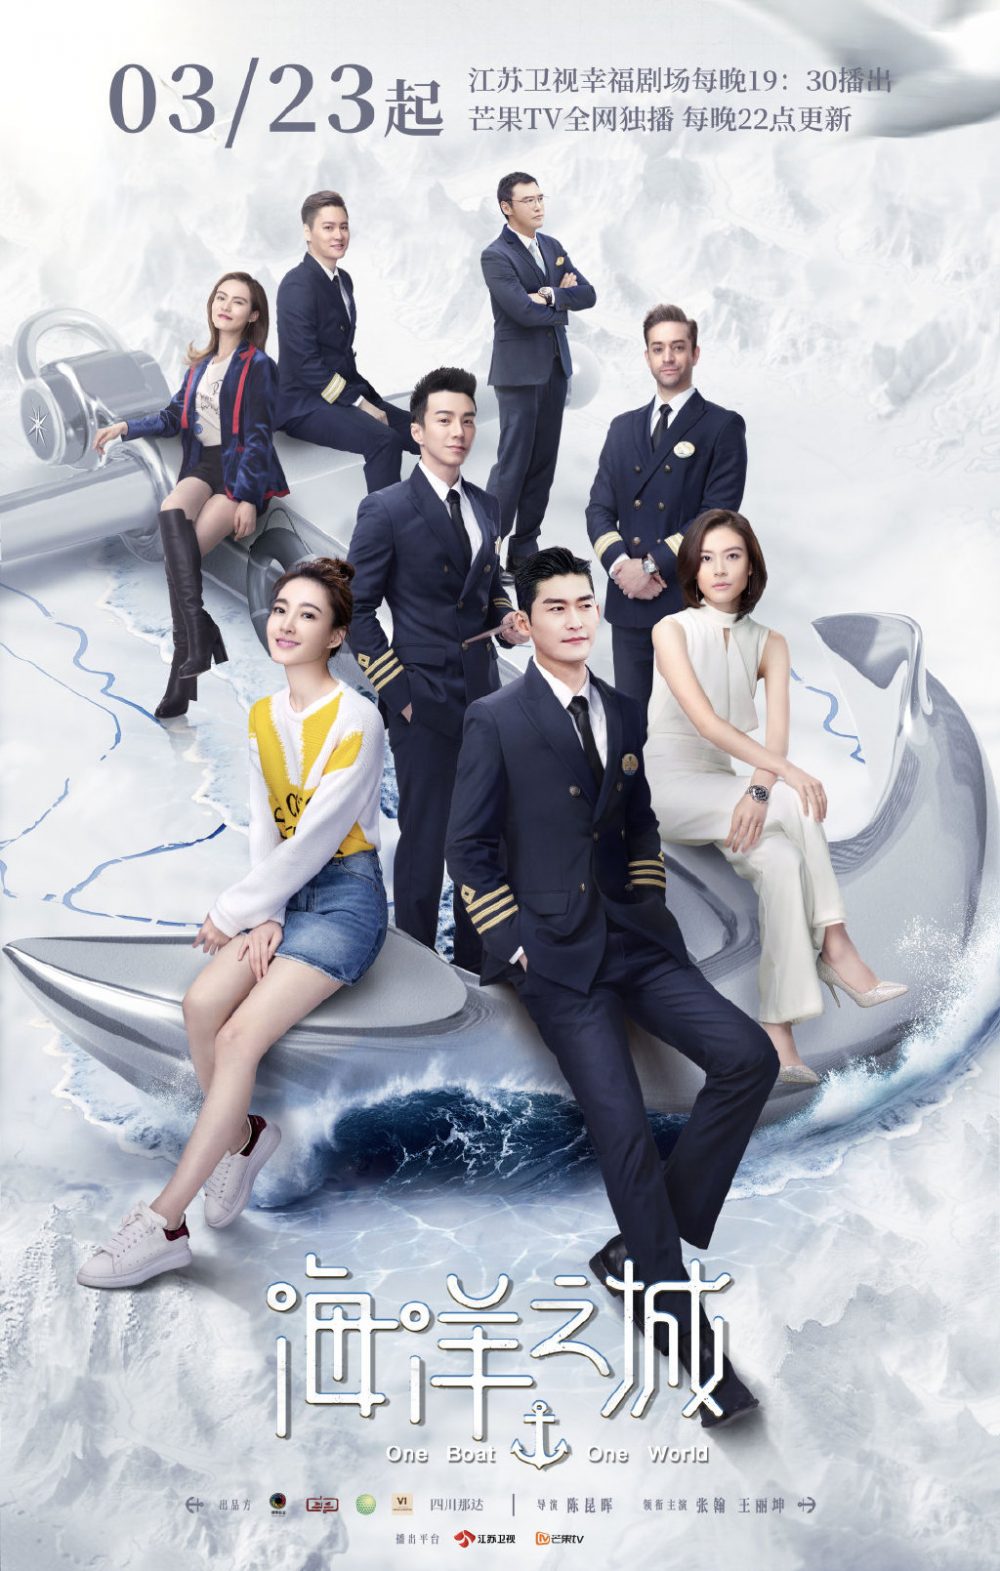 Phim mới của Trương Hàn: Thế giới trên biển - One Boat, One World (2021)